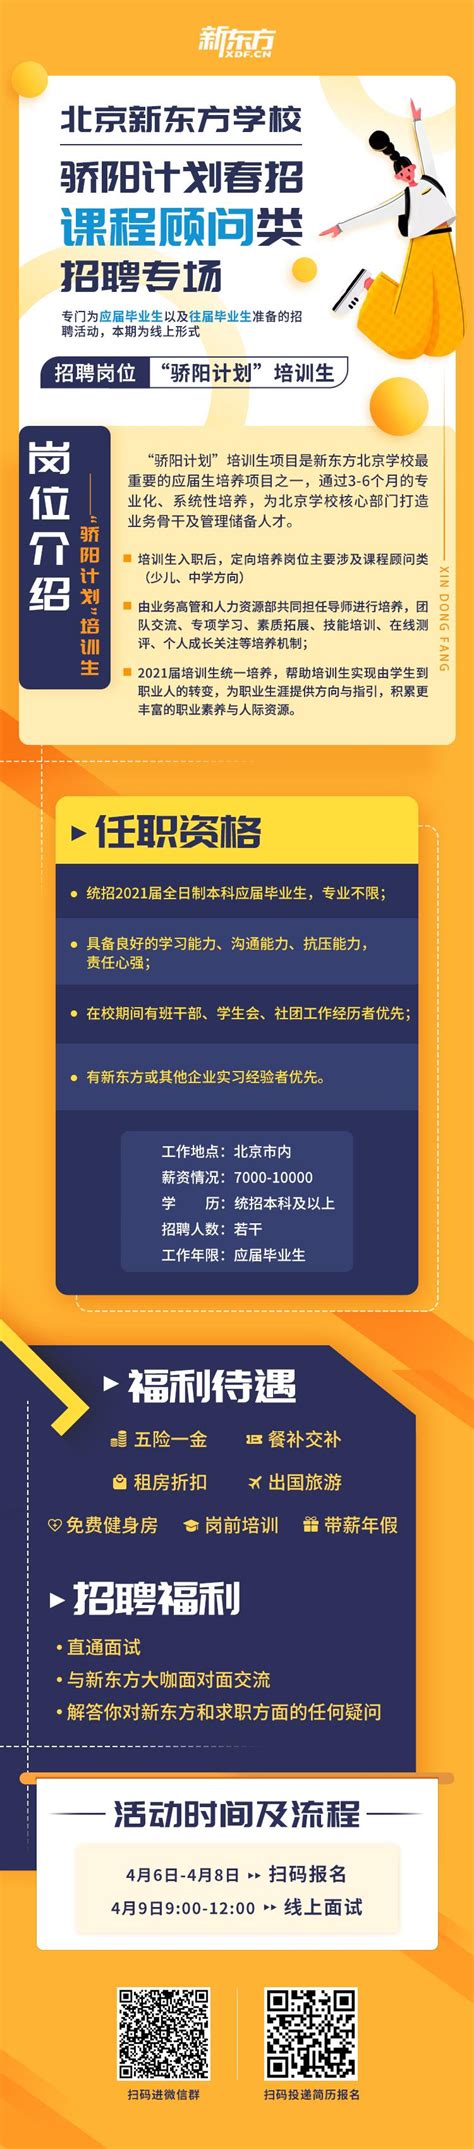 新东方北京学校骄阳计划招聘活动来啦-保定学院就业指导中心